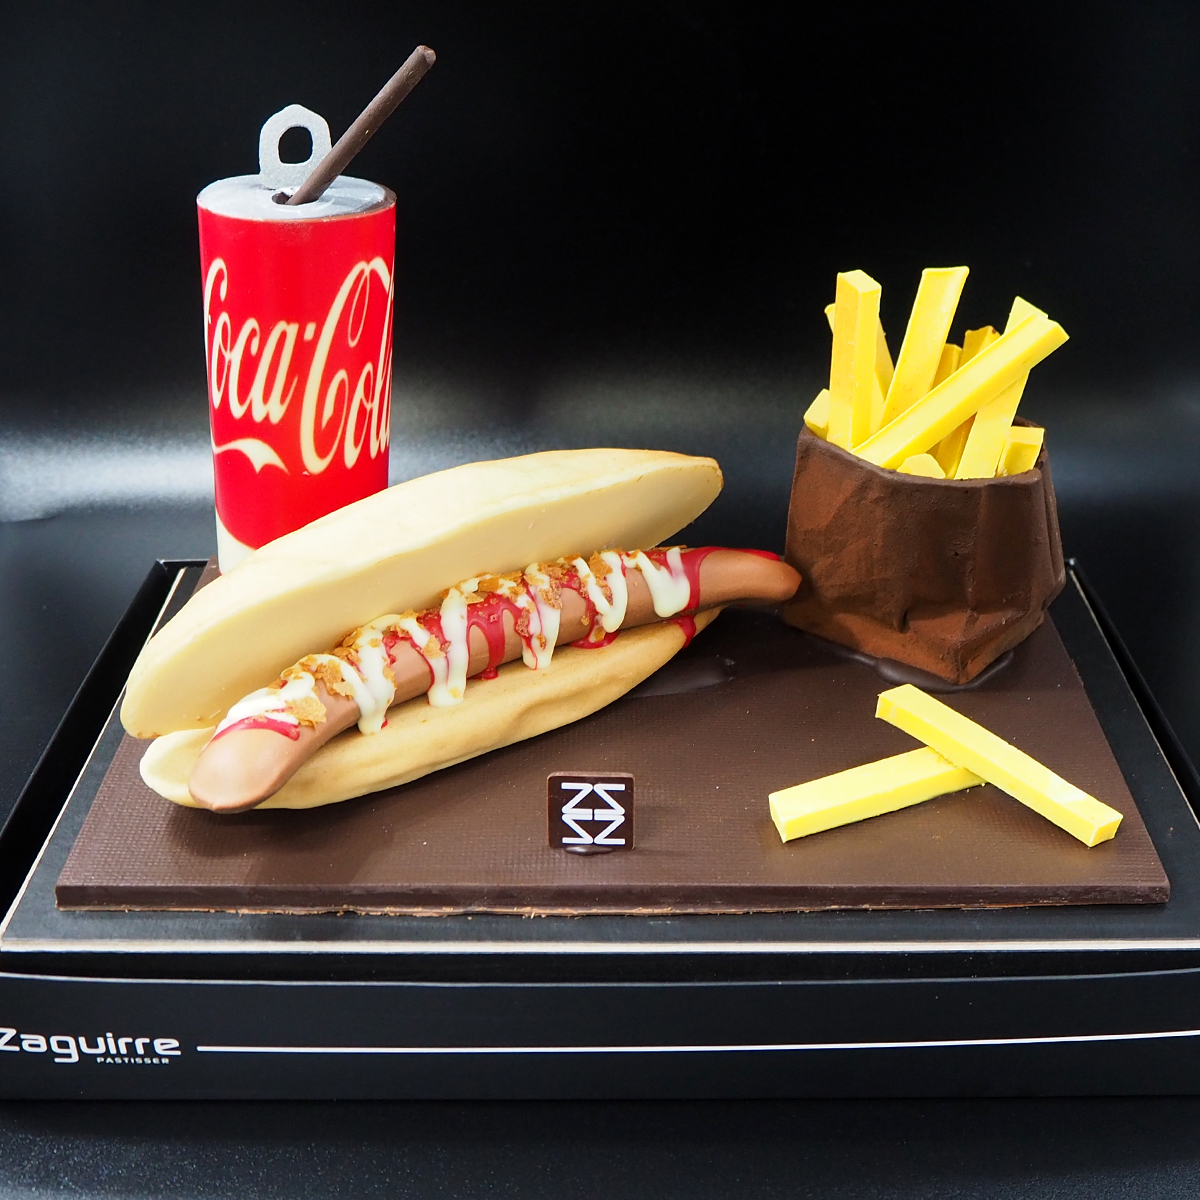 Mona de Pascua de chocolate con forma de hot dog elaborada artesanalmente por Zaguirre Pastisser.